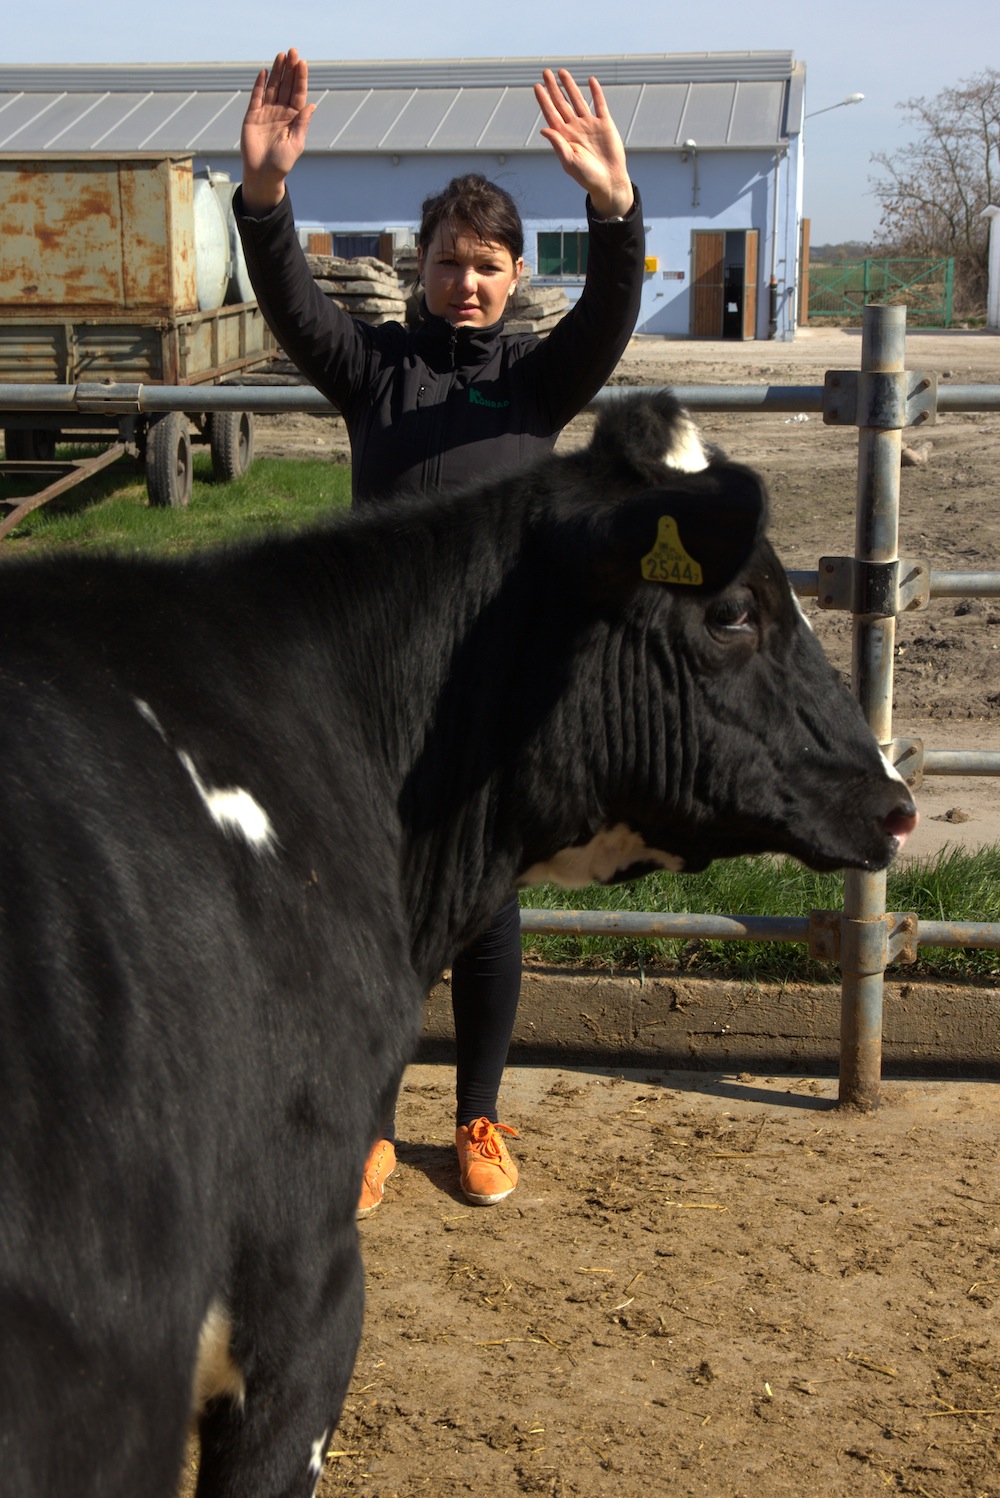 Galeria zdjęć do artykułu "Poskromić krowę". Krowę najlepiej zatrzymać podnosząc do góry ręce, przy jednocześnie rozsuniętych nogach i cichym pogwizdywaniu